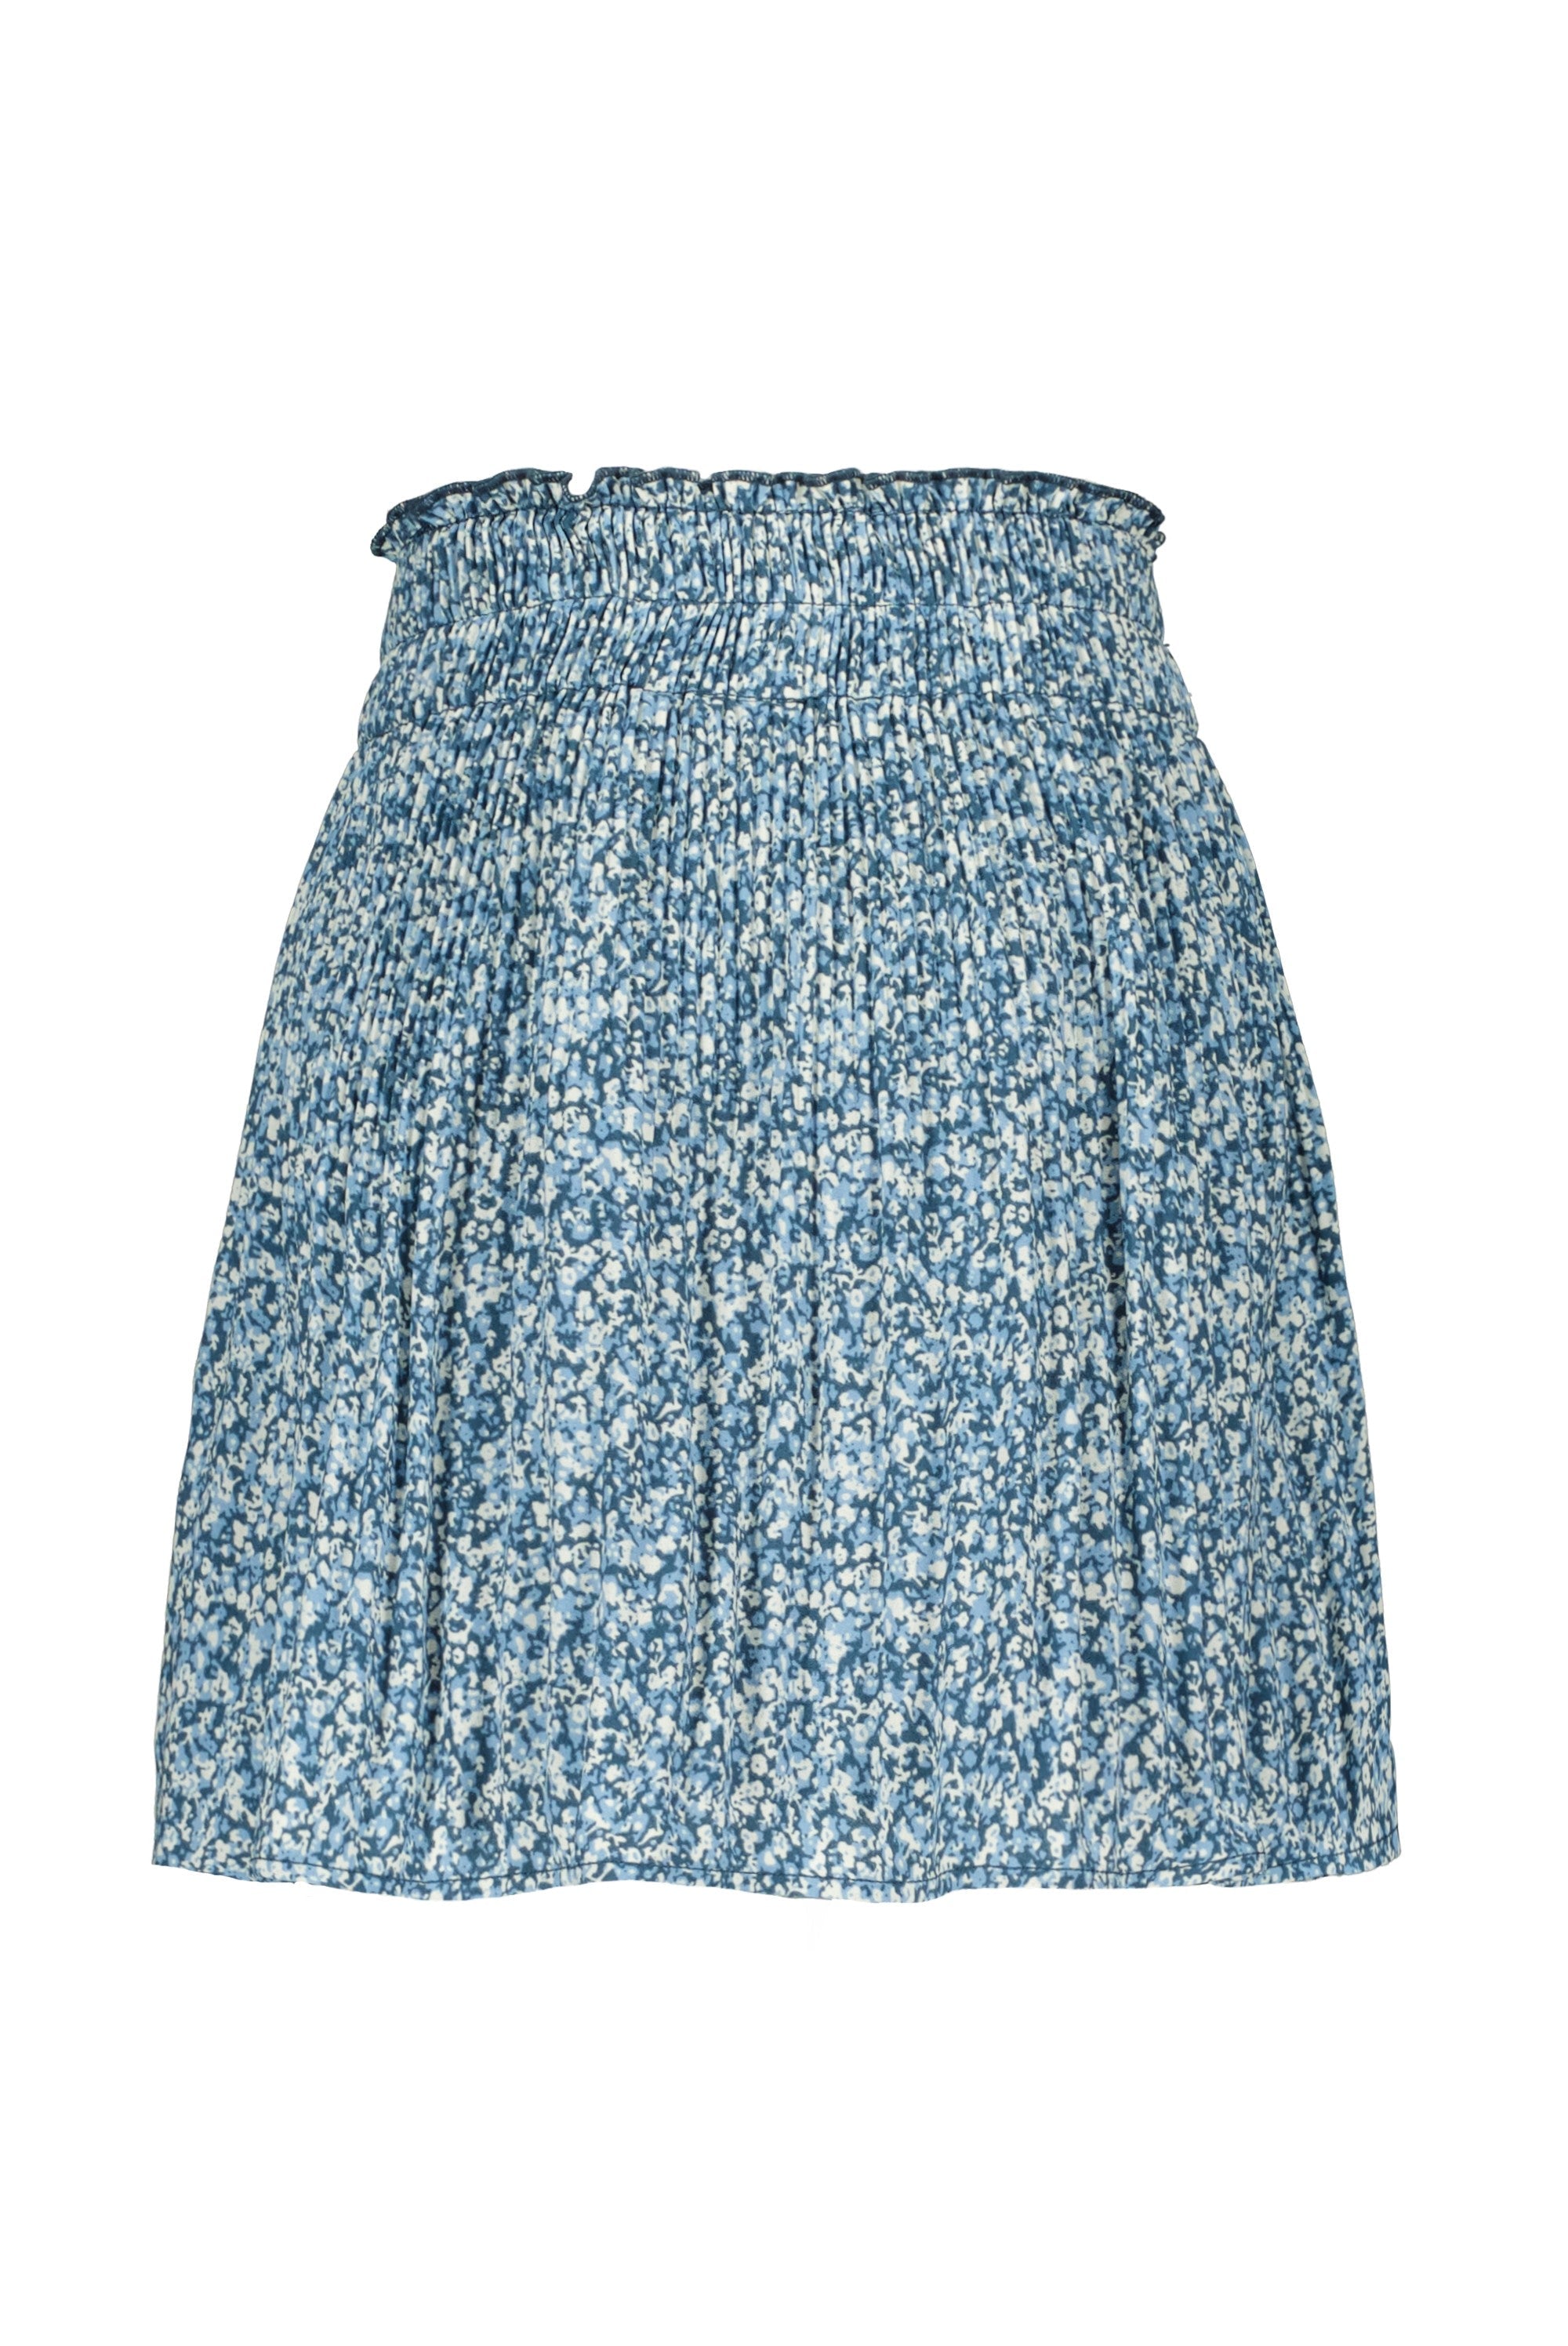 Meisjes Crepe Plisse Skirt van Like Flo in de kleur Blue flower in maat 152.